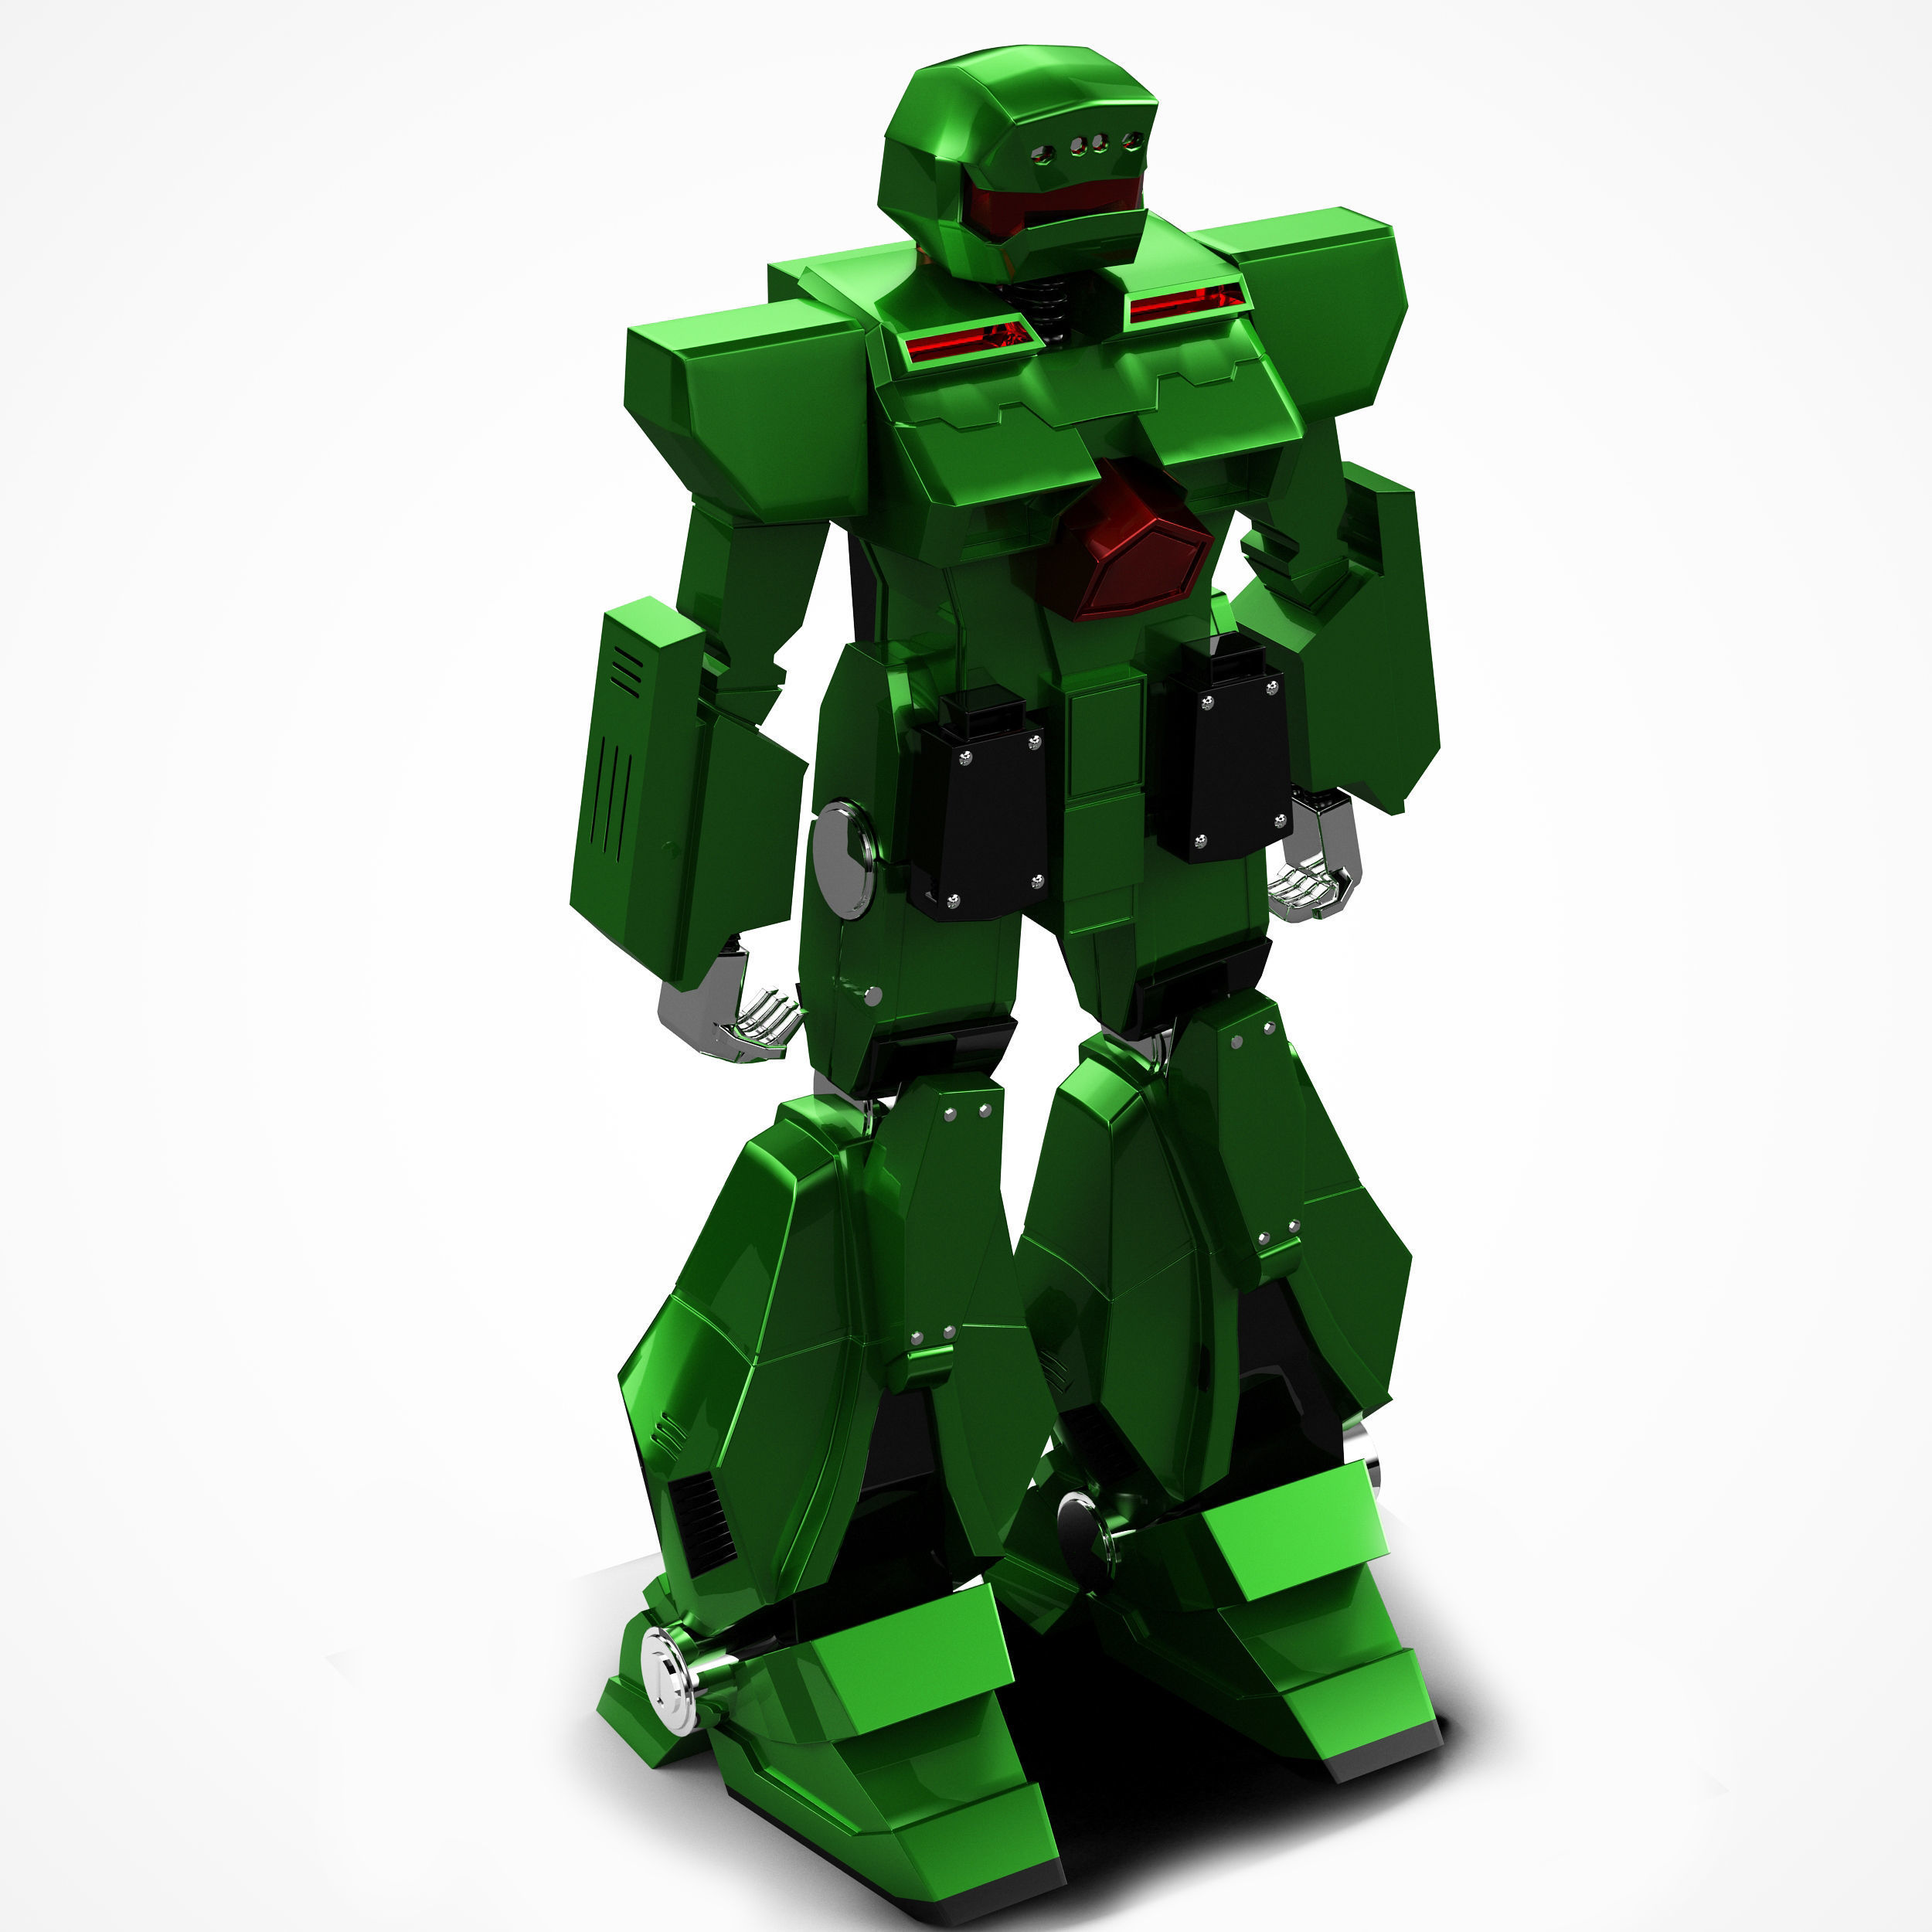 Игра зеленый робот. Зеленый робот. Робот зеленый игрушка. Робот в зеленых тонах. Робот зеленый робот.